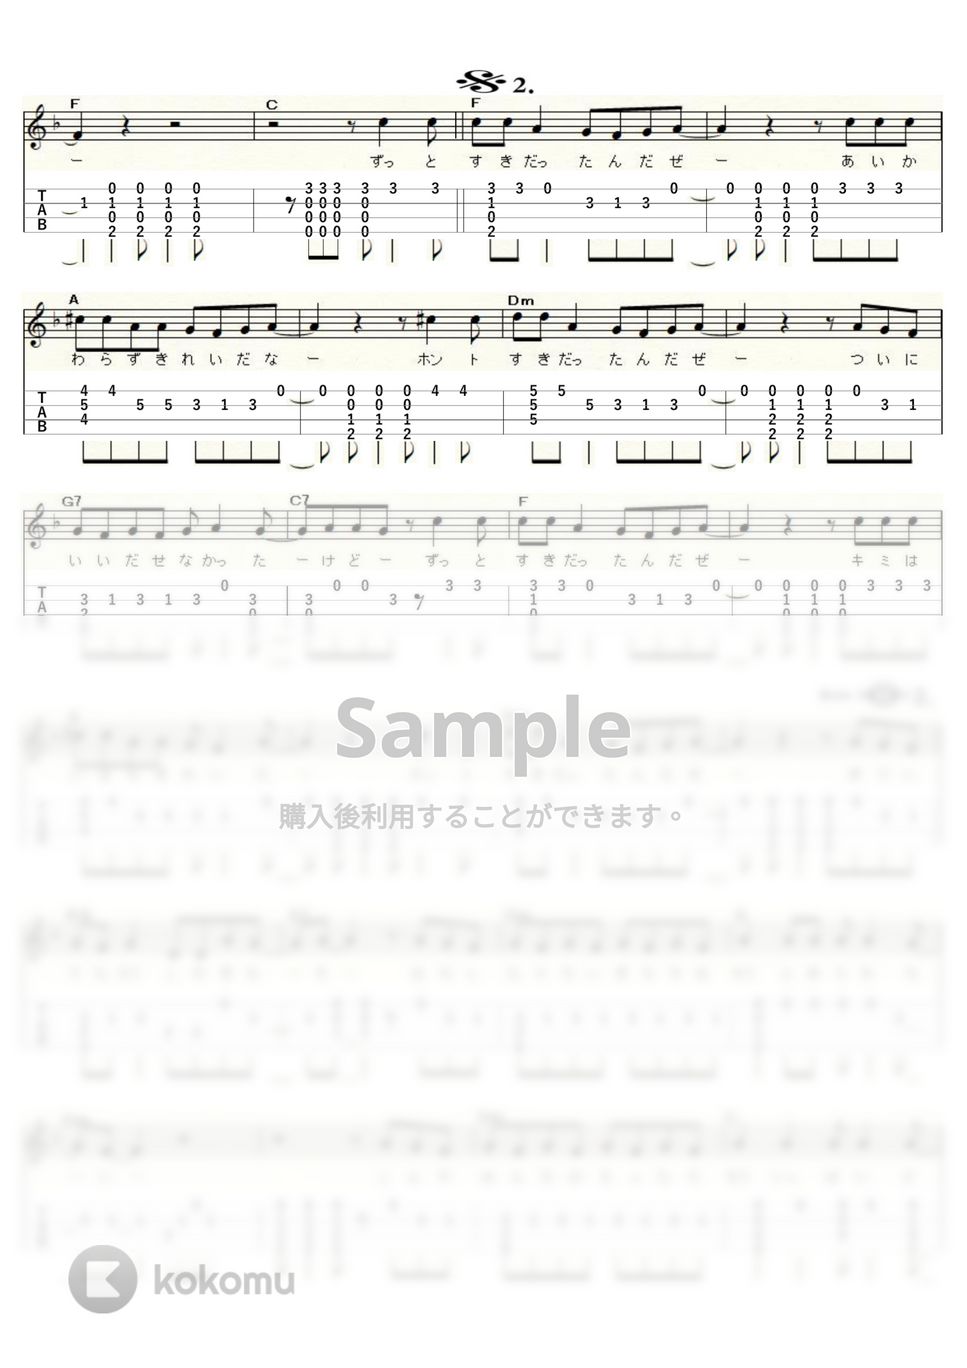 斉藤和義 - ずっと好きだった (ｳｸﾚﾚｿﾛ/High-G・Low-G/中級) by ukulelepapa